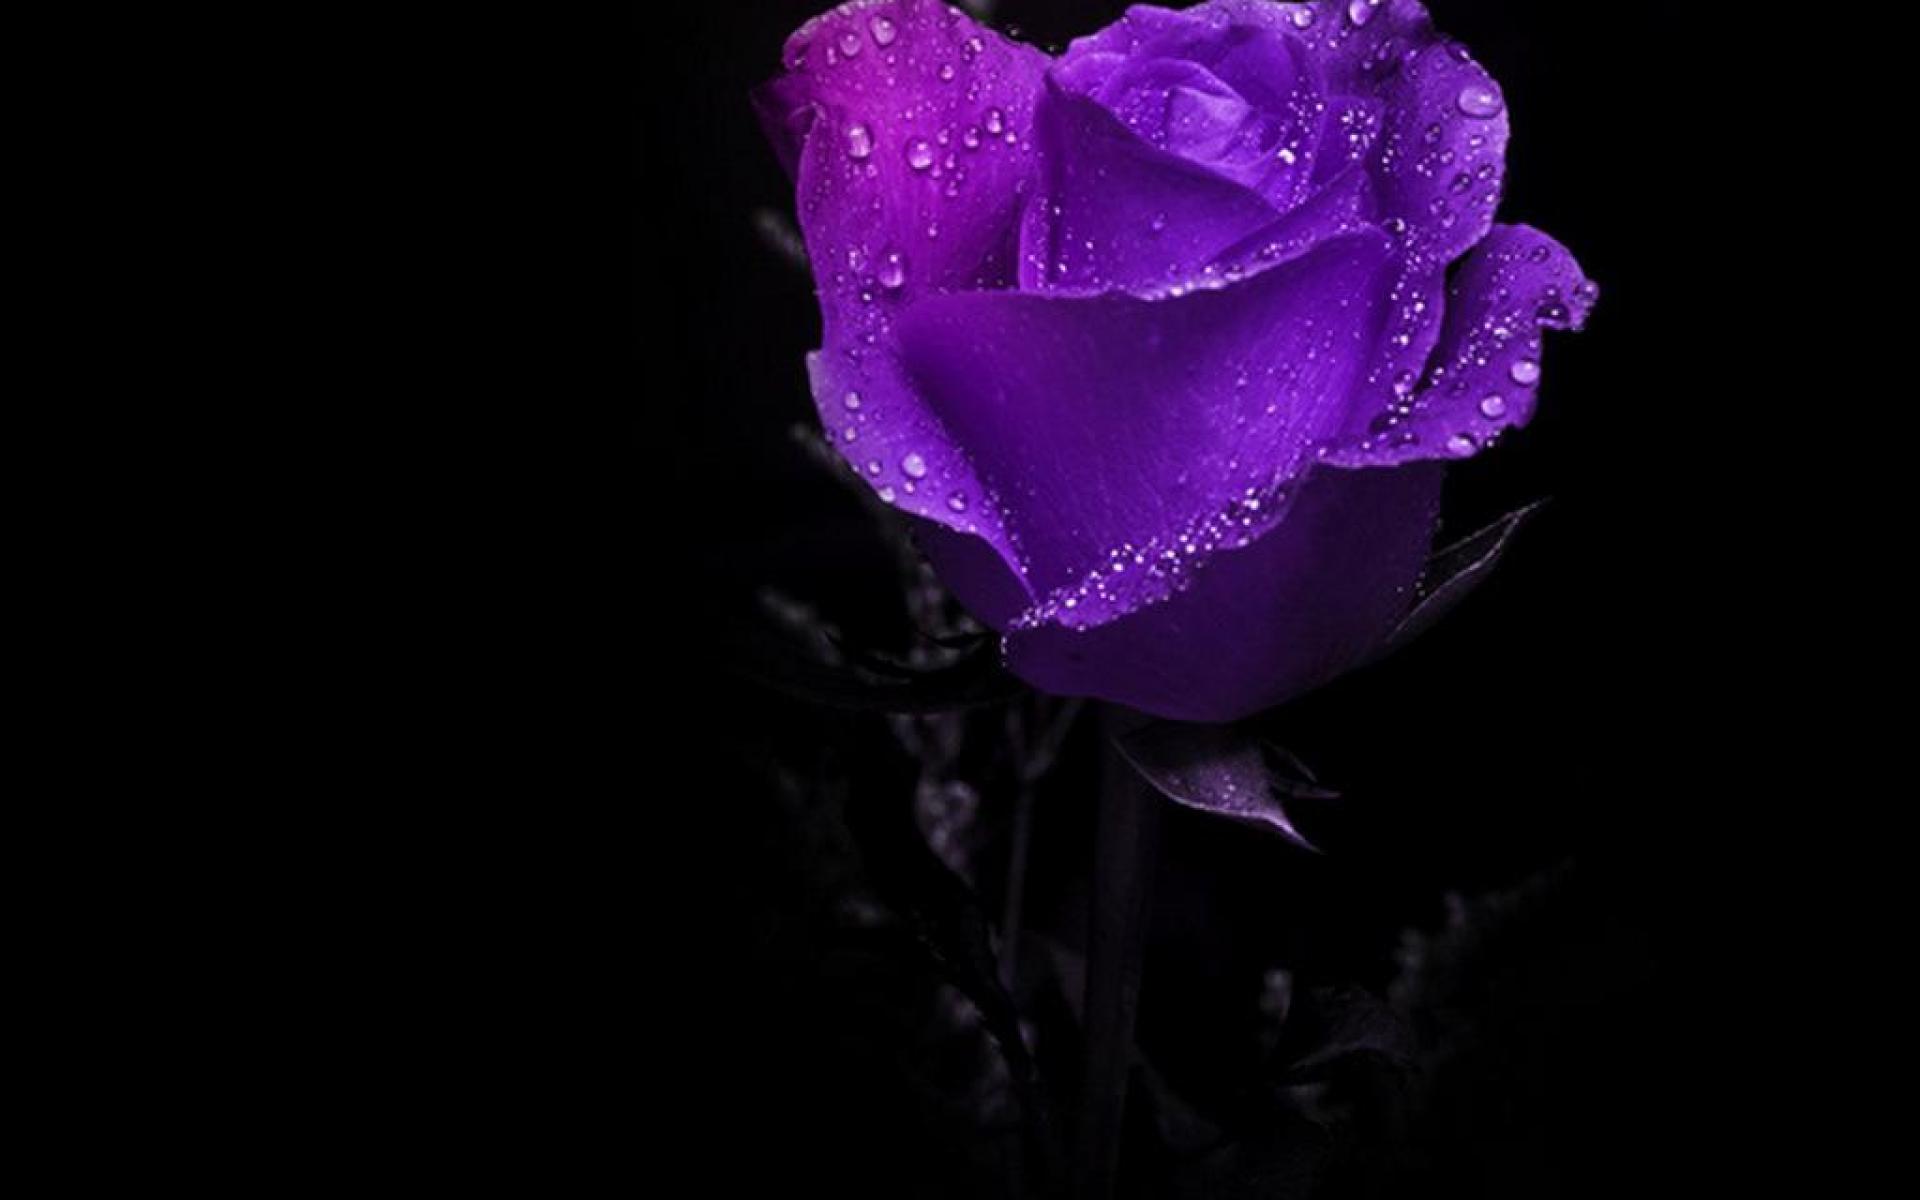 rosa viola wallpaper hd,petalo,rose da giardino,viola,rosa,viola